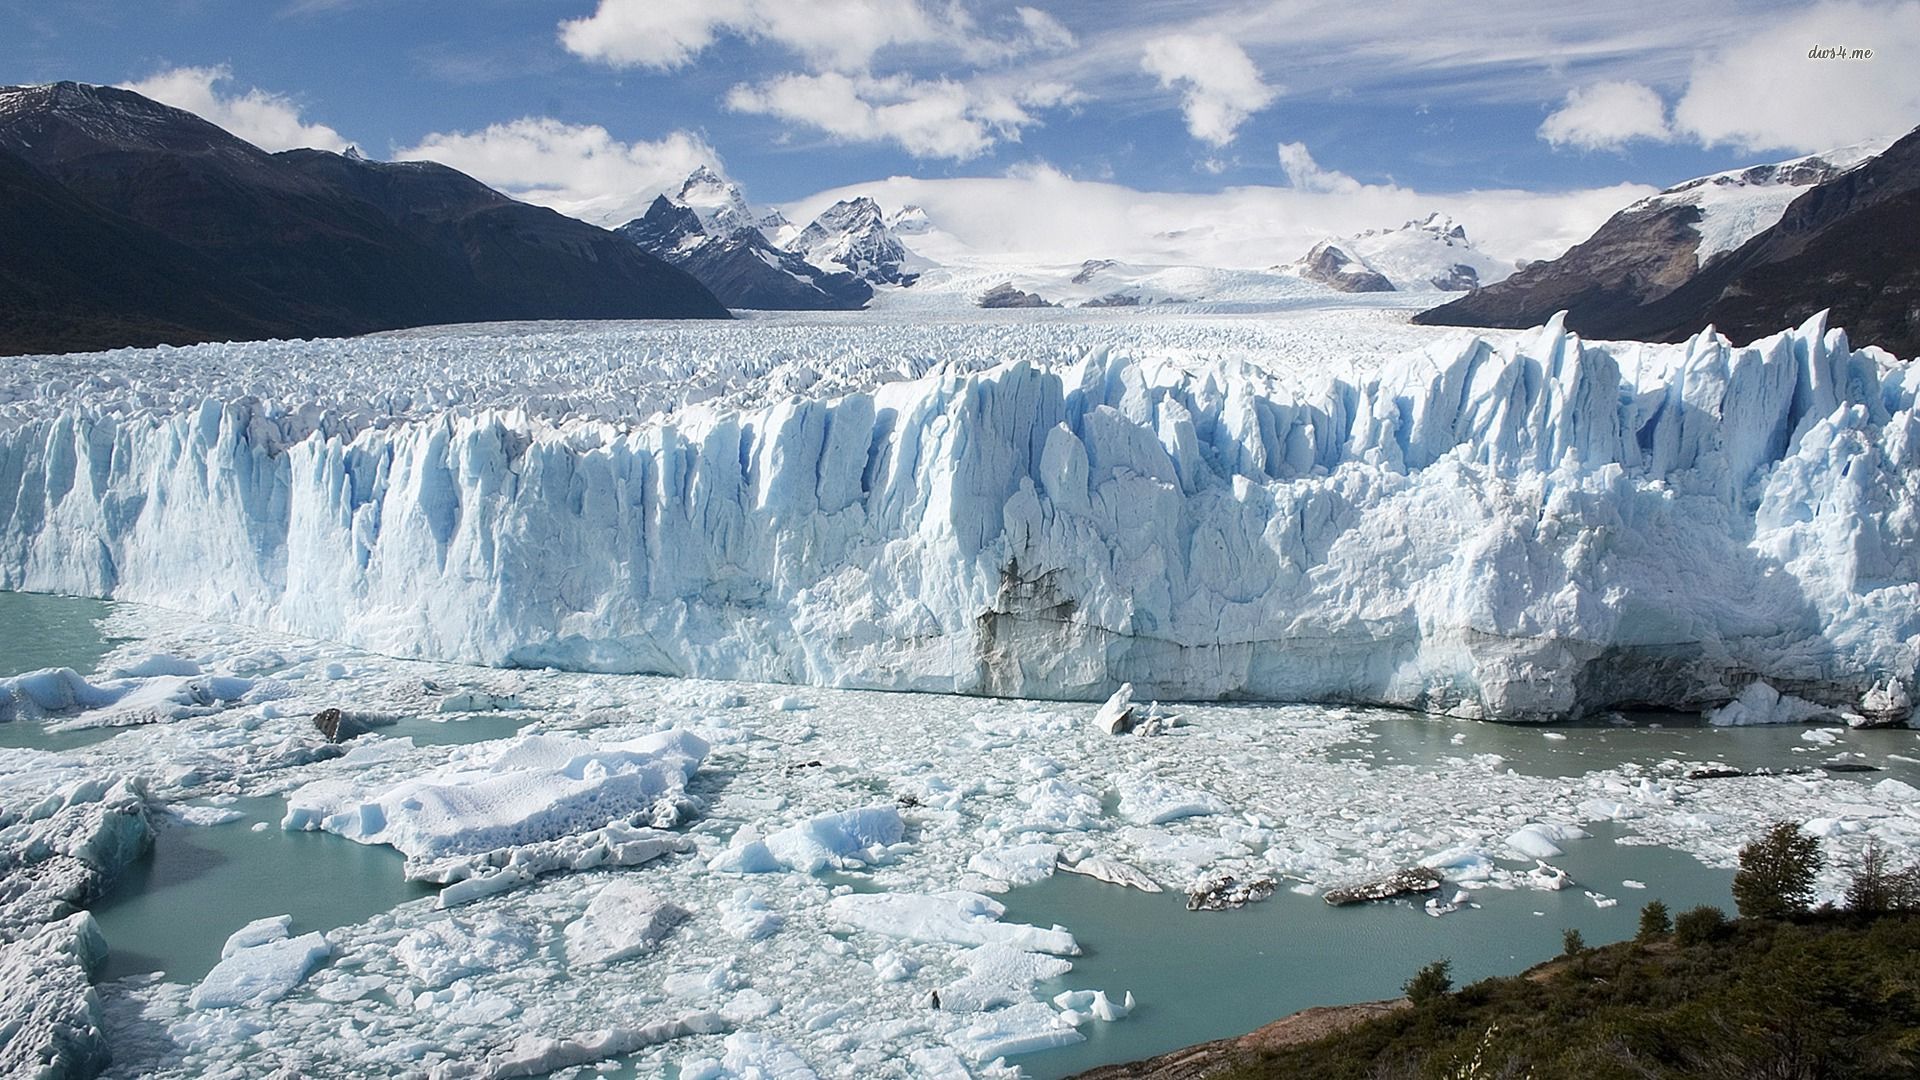 General 1920x1080 perito moreno glacier Patagonia nature landscape